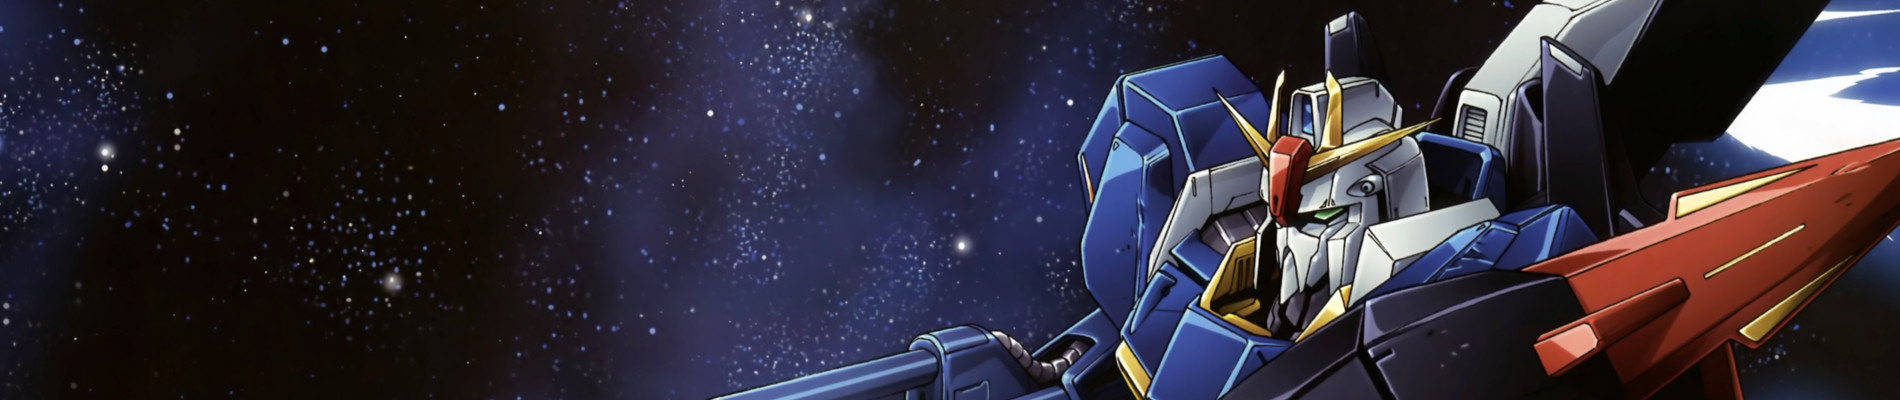 Banner for Mobile Suit Zeta Gundam